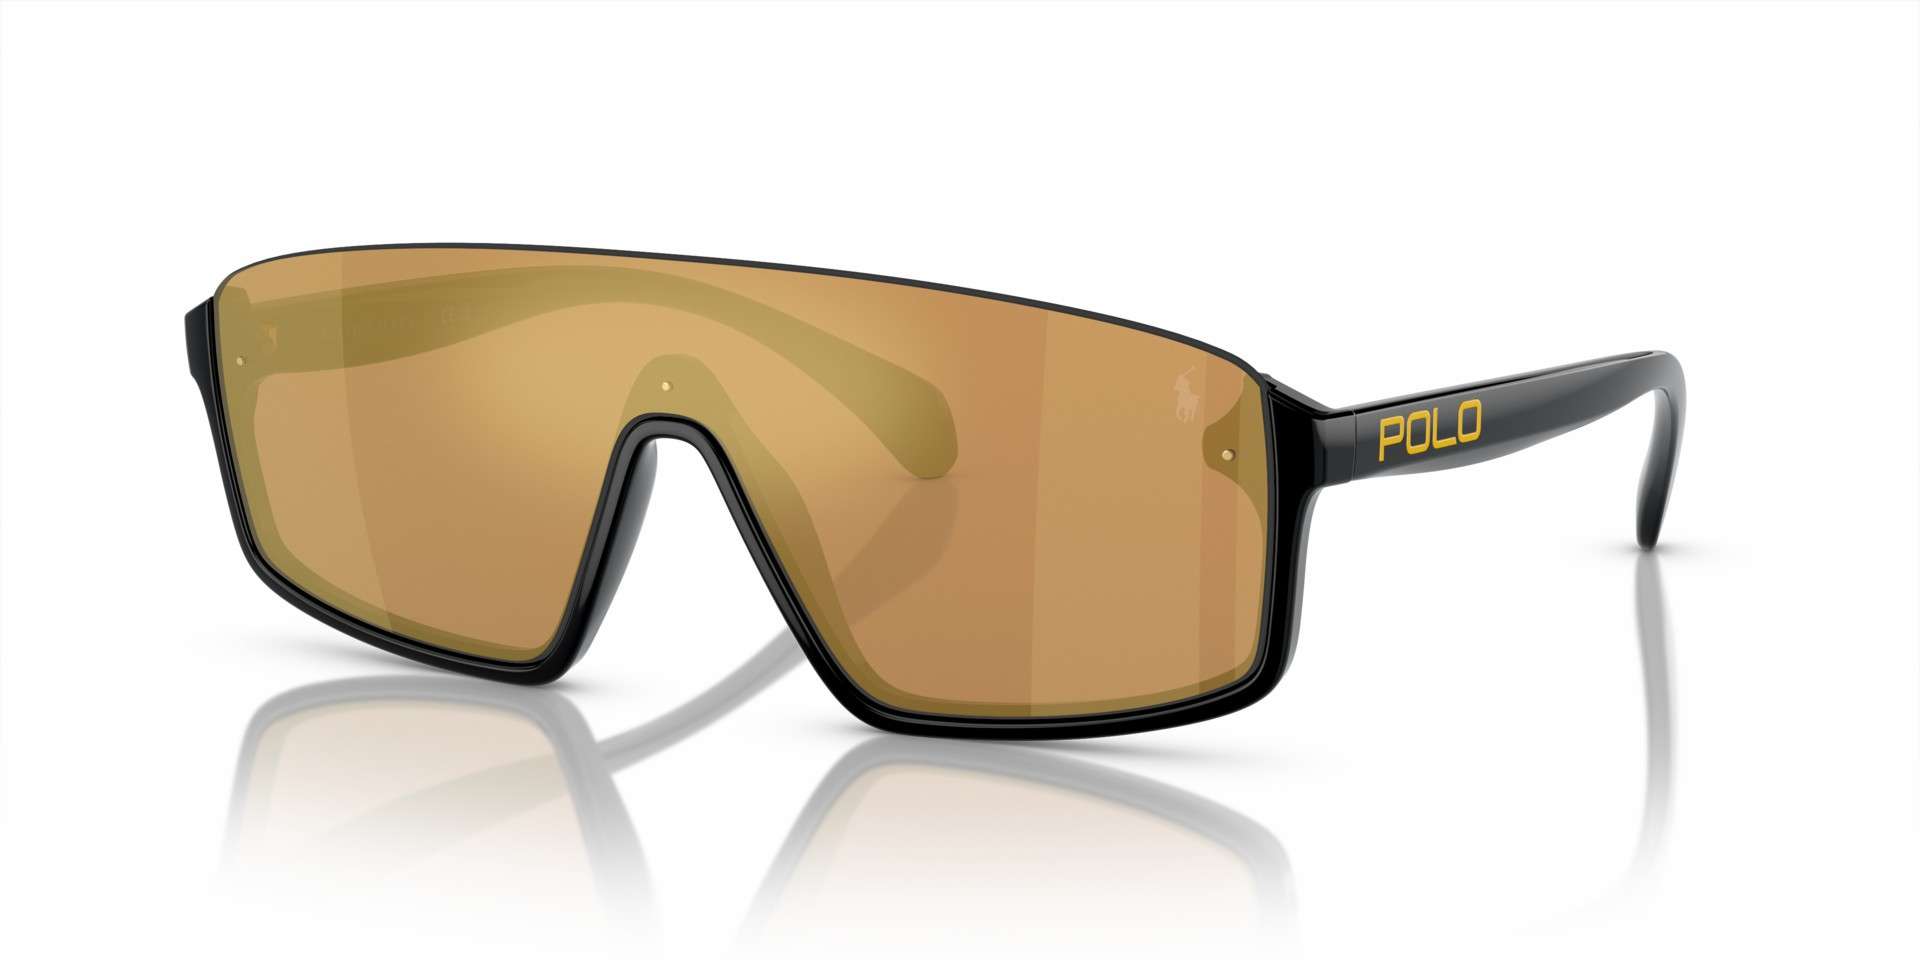 Polo solbriller - ph4211u 50017J fra Polo - Svart - plast - sport - Standard